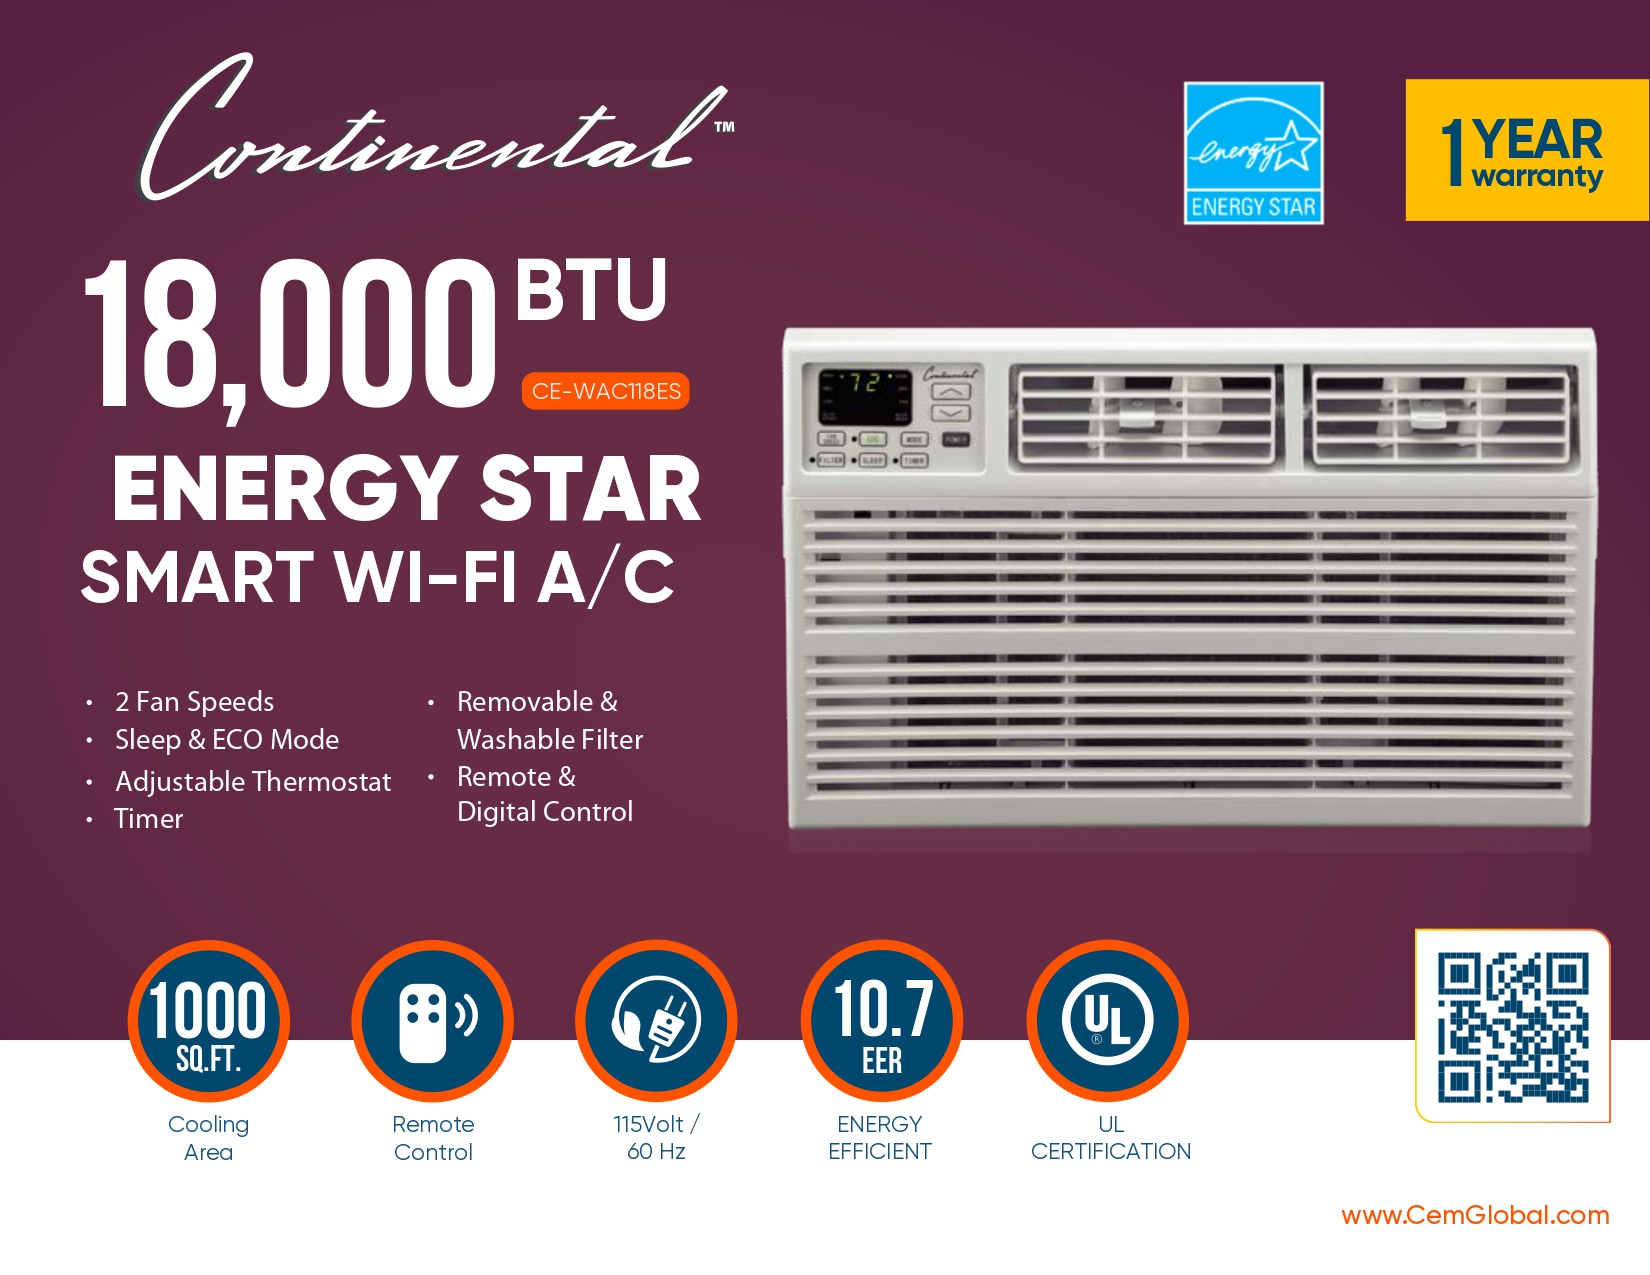 18,000 BTU ENERGY STAR SMART WI-FI A/C